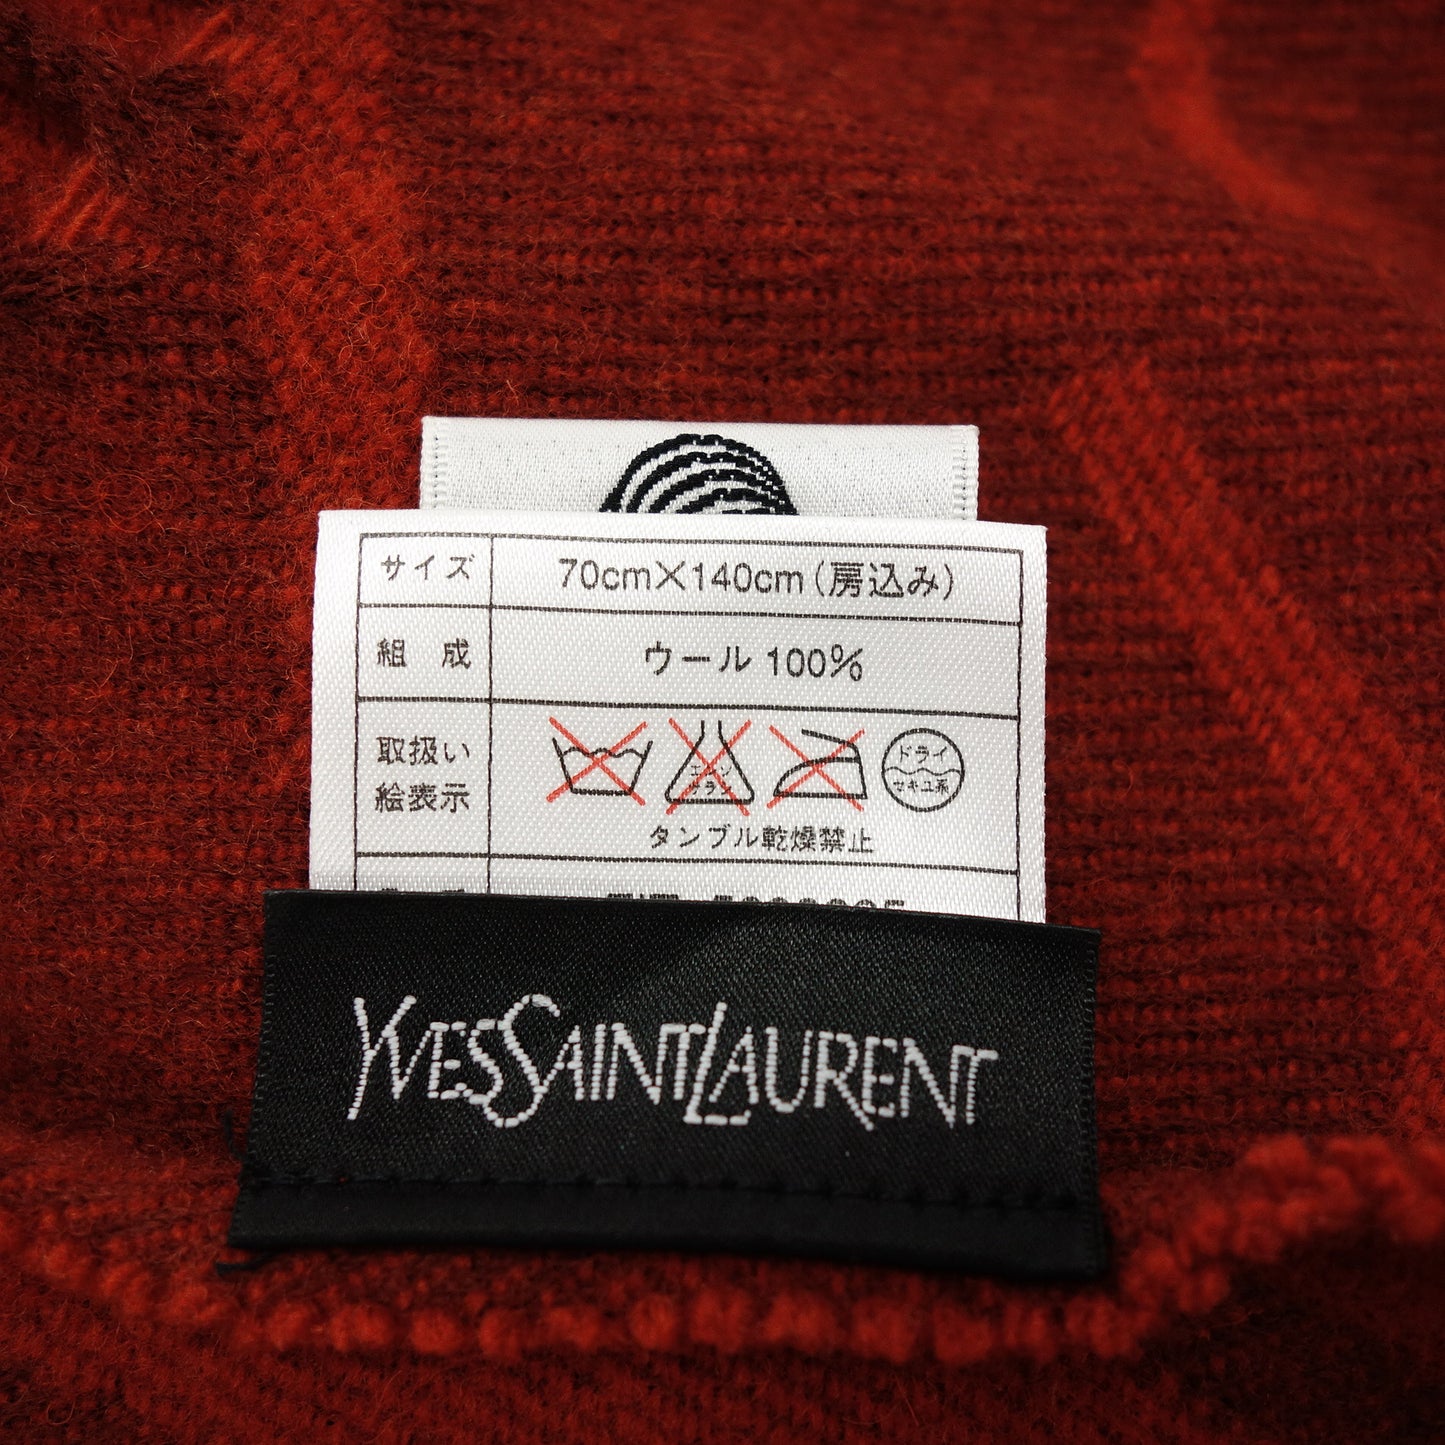 状况良好◆ Yves Saint Laurent 围巾羊毛红色大号 YVES SAINT LAURENT [AFI23] 